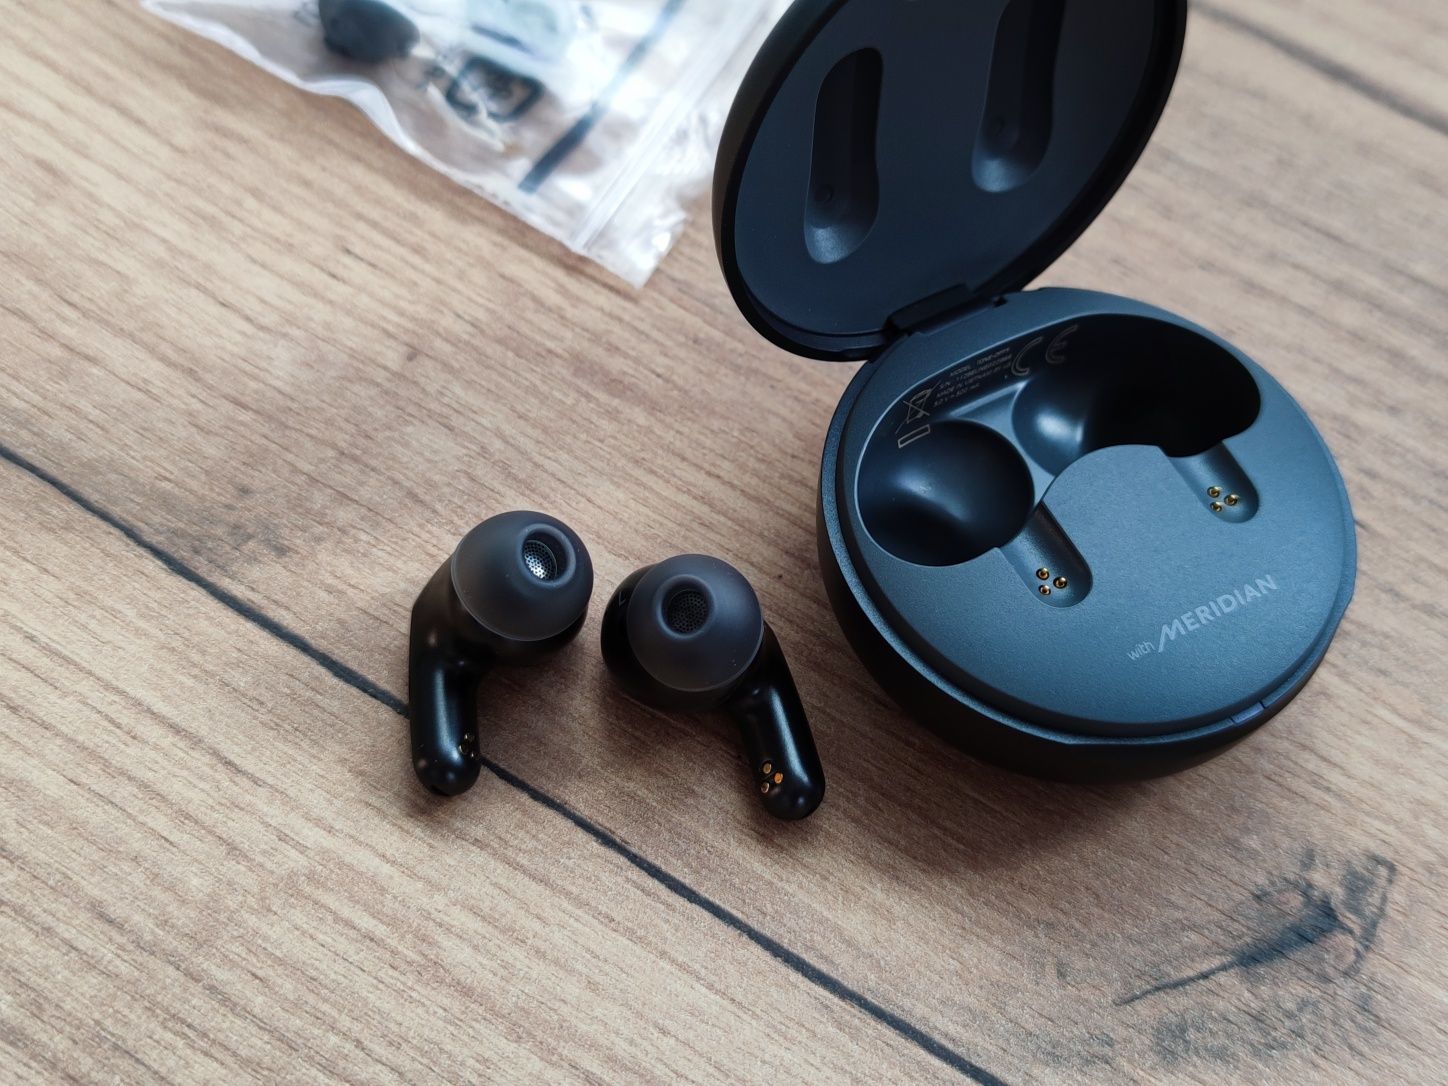 Słuchawki bezprzewodowe bluetooth LG Tone Free FP5 ANC lepsze od JBL